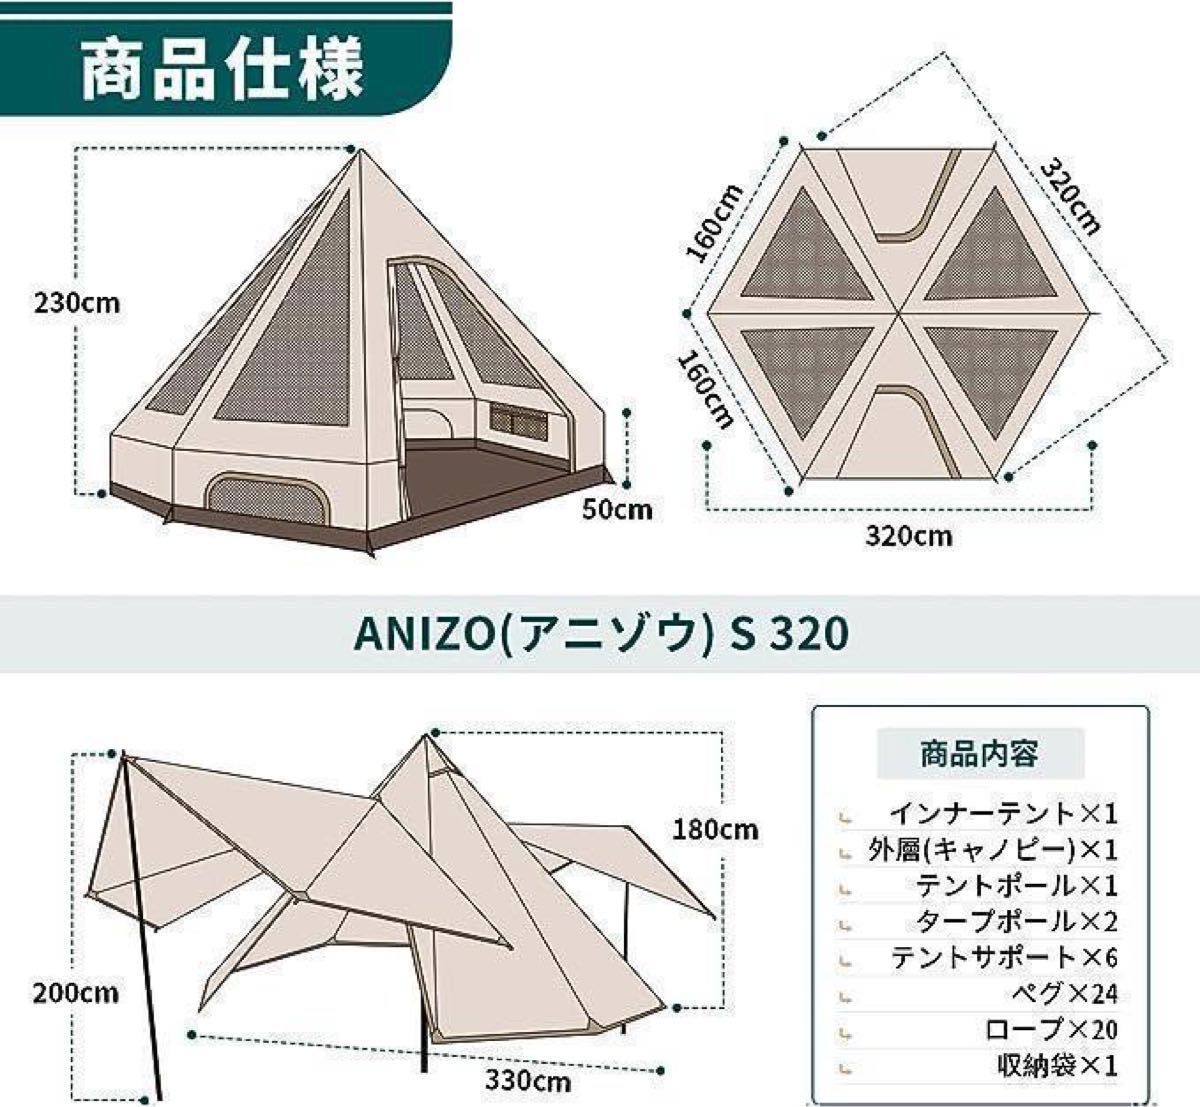 ベルテント 2～4人用 アウトドア キャンプ 大型 UVカット 防虫ネット 簡単設営 UVカット